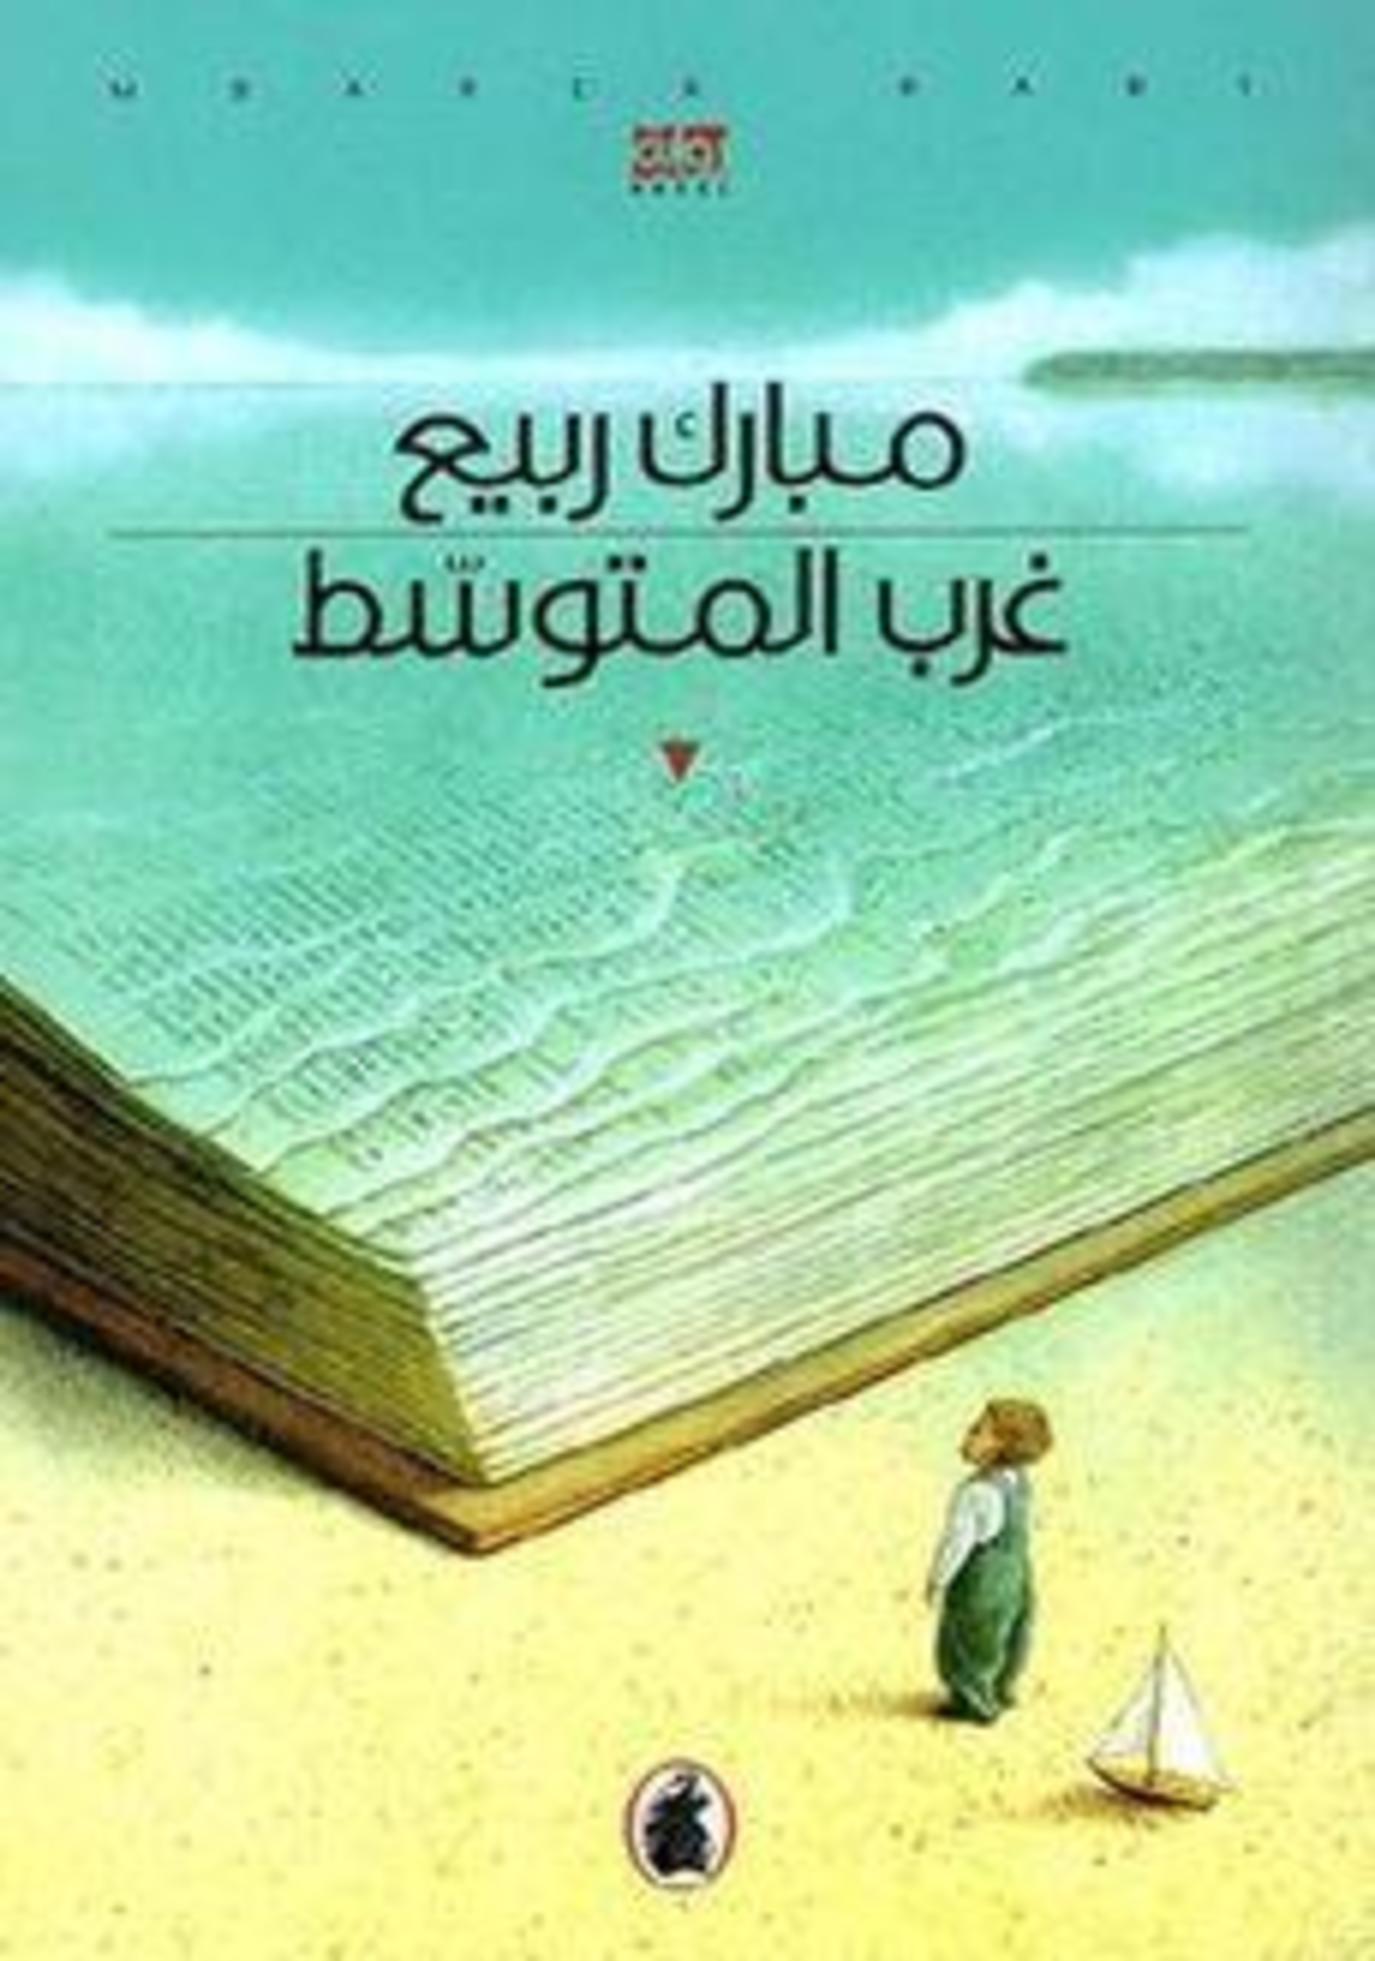 10 روايات خيالية عربية من أبرز ما قدمته دور النشر مجلة سيدتي